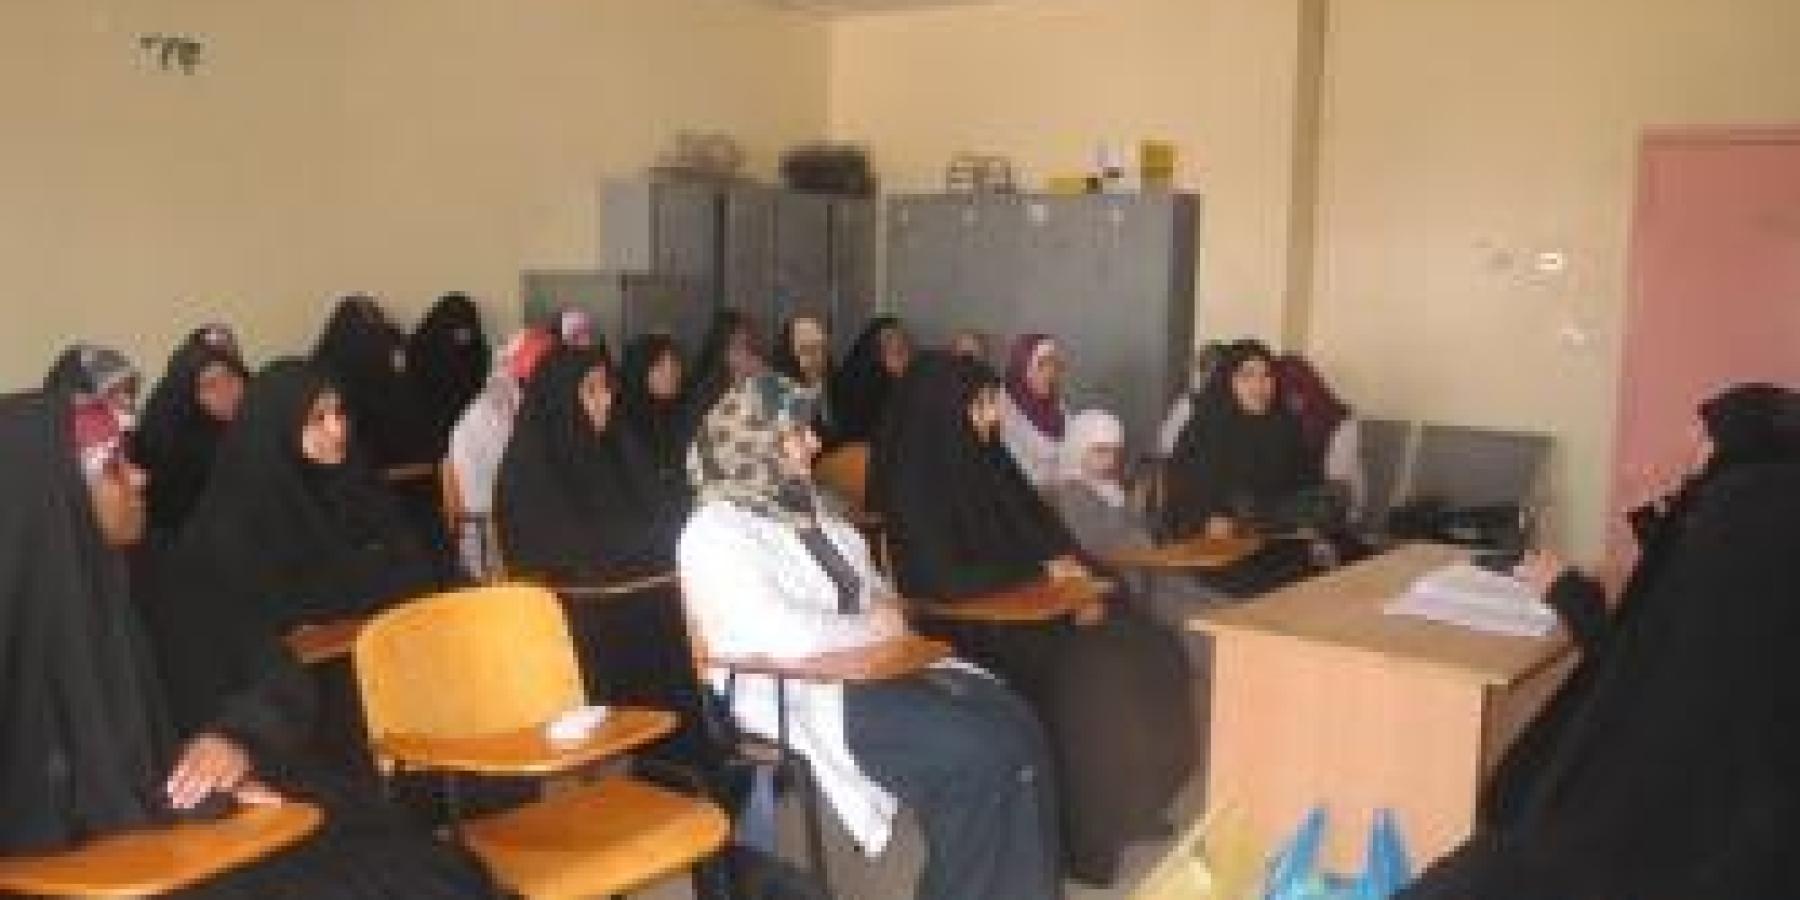 وحدة التعليم النسوي الديني في العتبة العلوية المقدسة تقيم ندوة فقهية في مستشفى الزهراء التعليمي